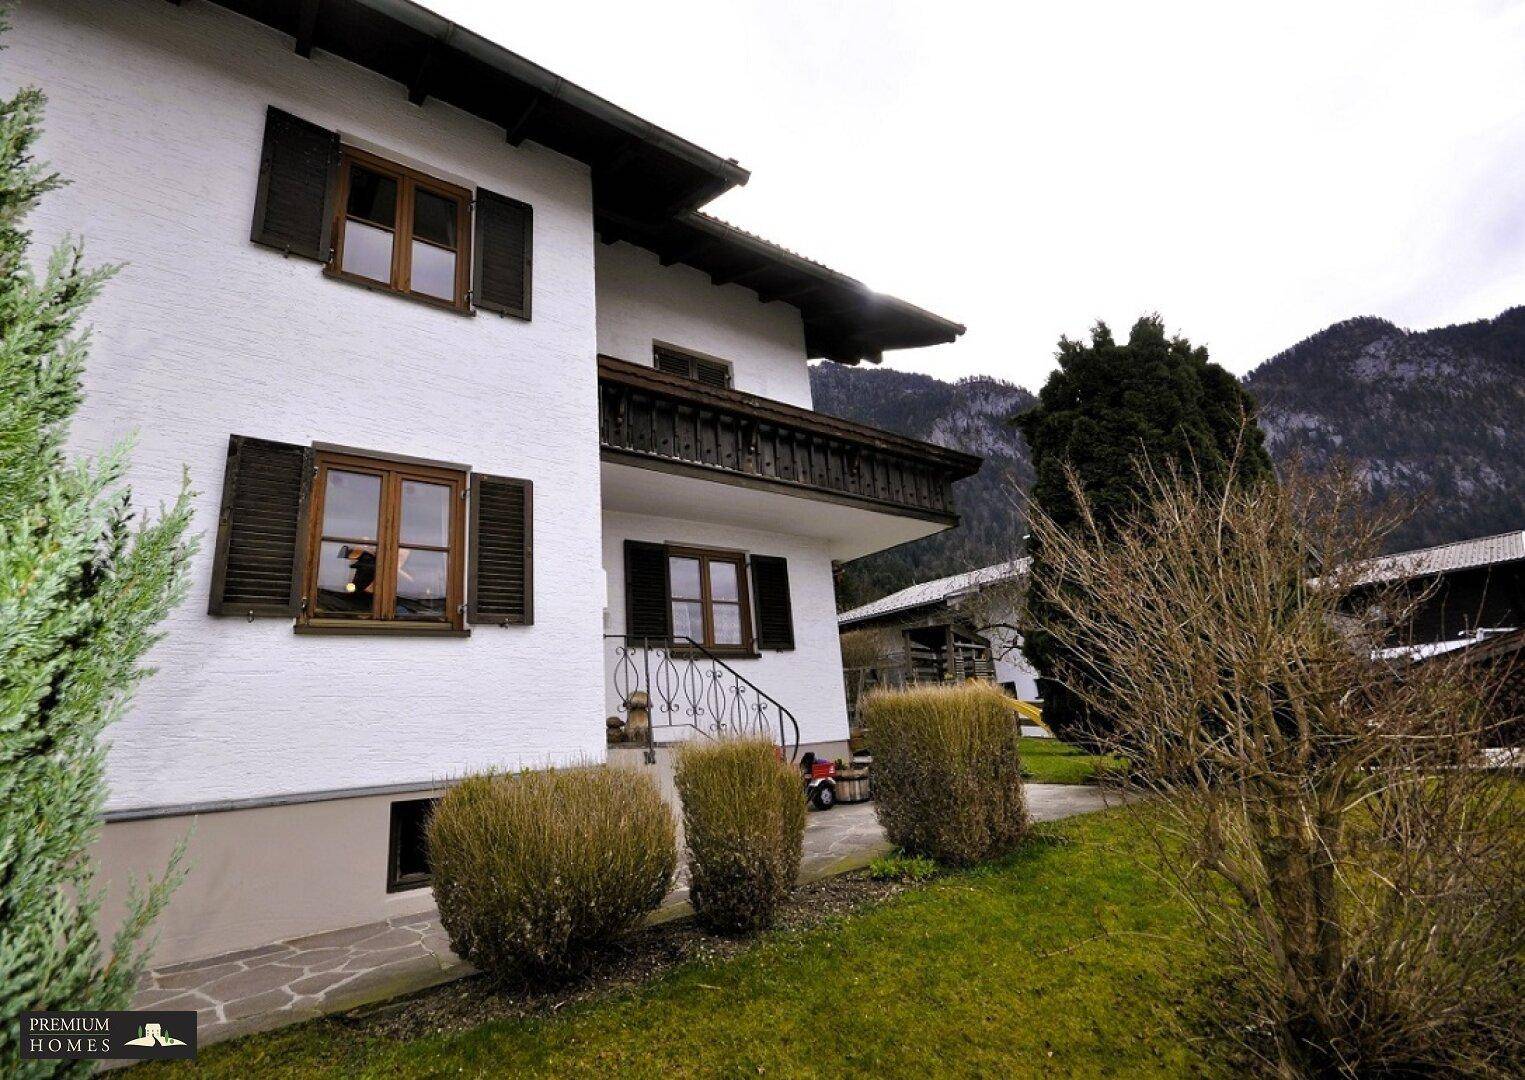 EBBS - Feldberg - Einfamilienwohnhaus - seitliche Hausansicht und Zugang zur Haustüre